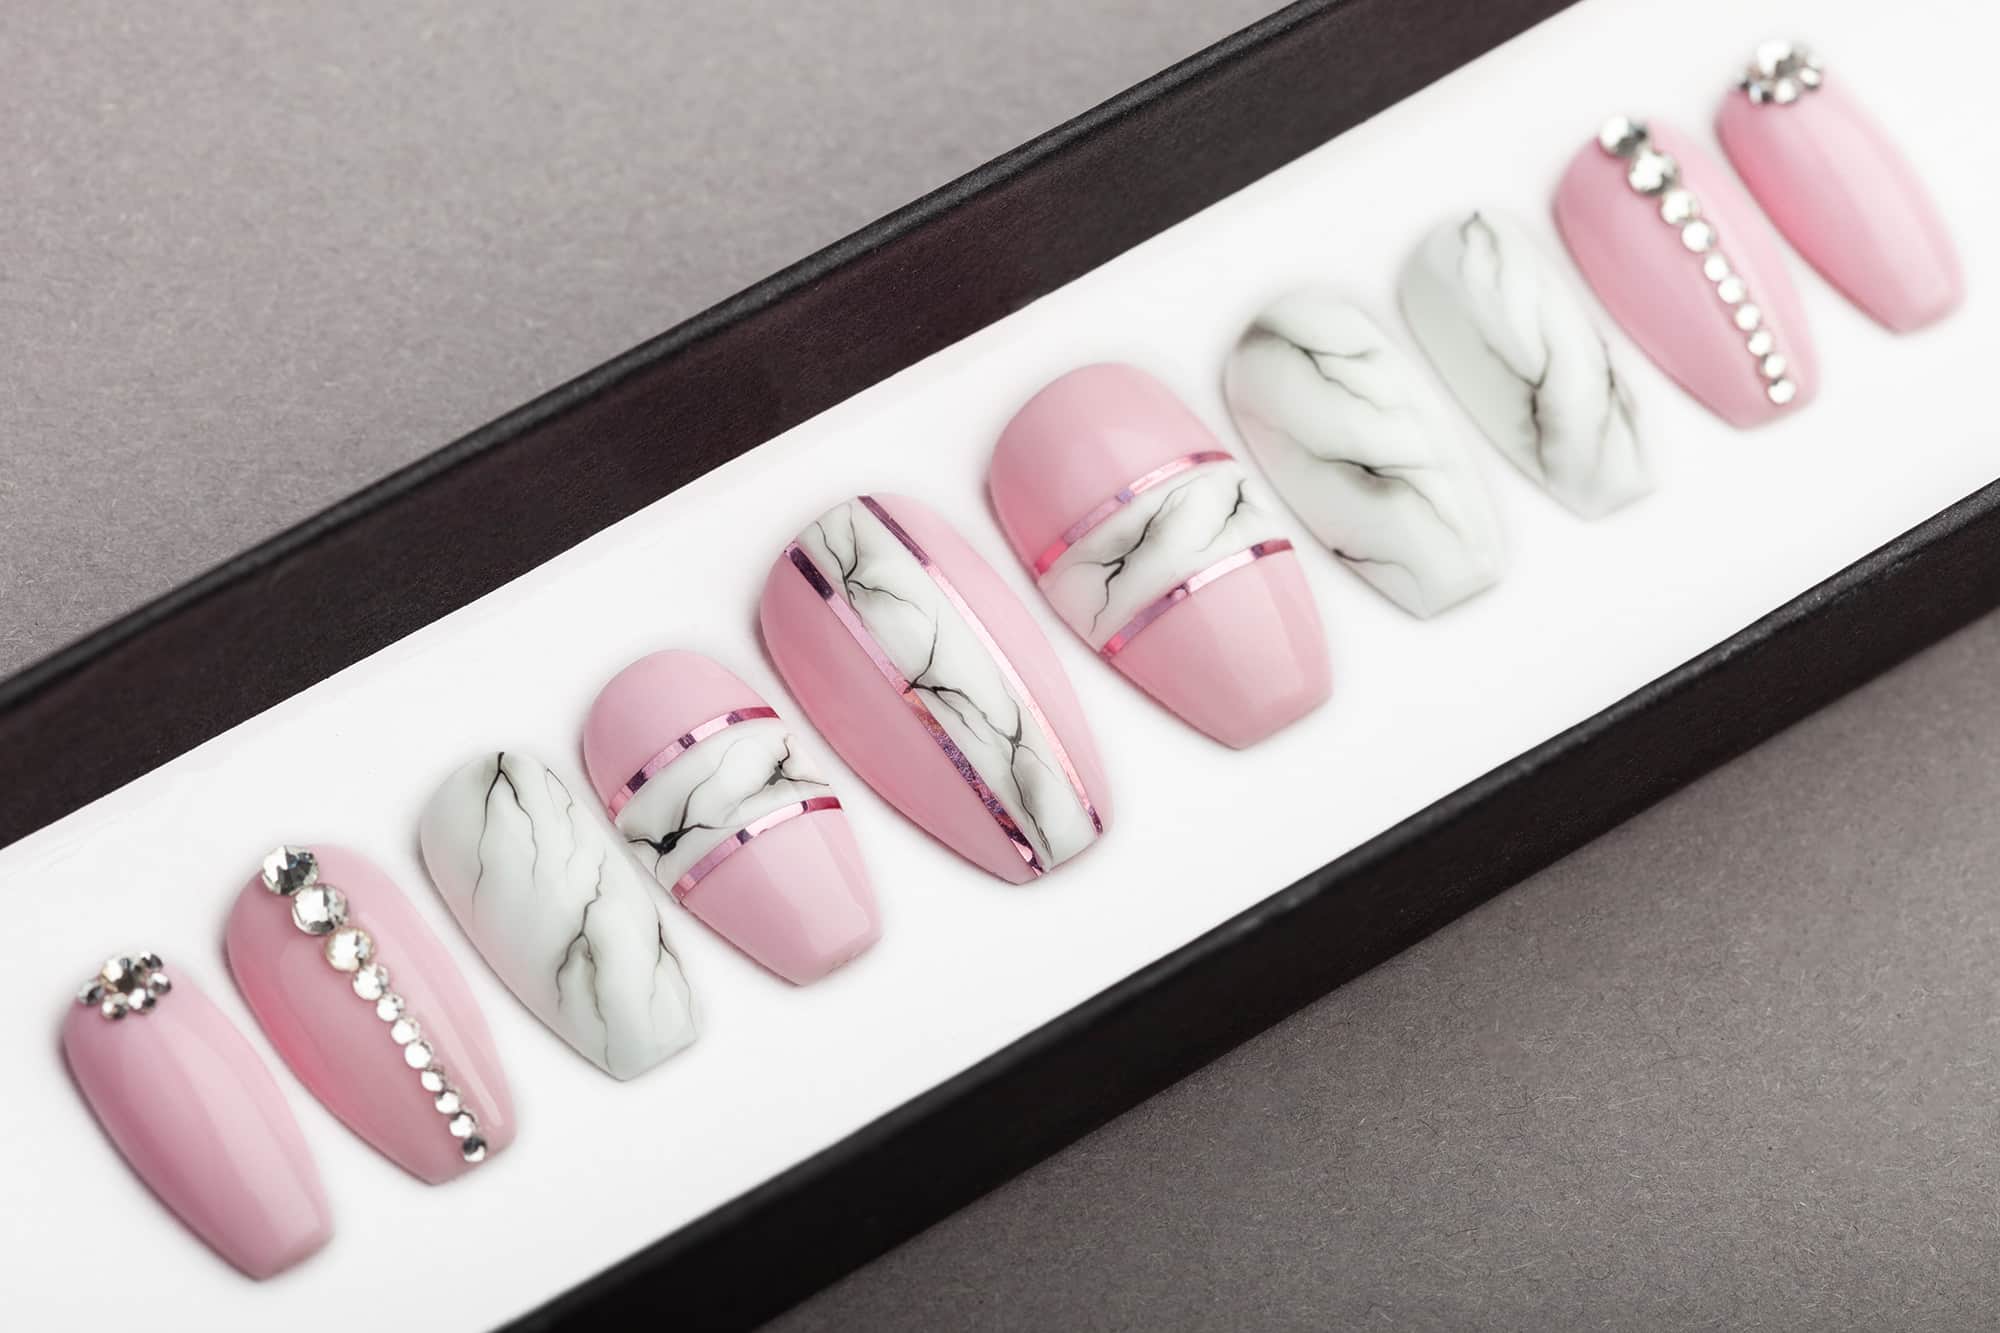 Pink and White Marble Press on Nails with Swarovski Crystals | Nail Art | Fake Nails | False Nails | Glue On Nails | Acrylic Nails